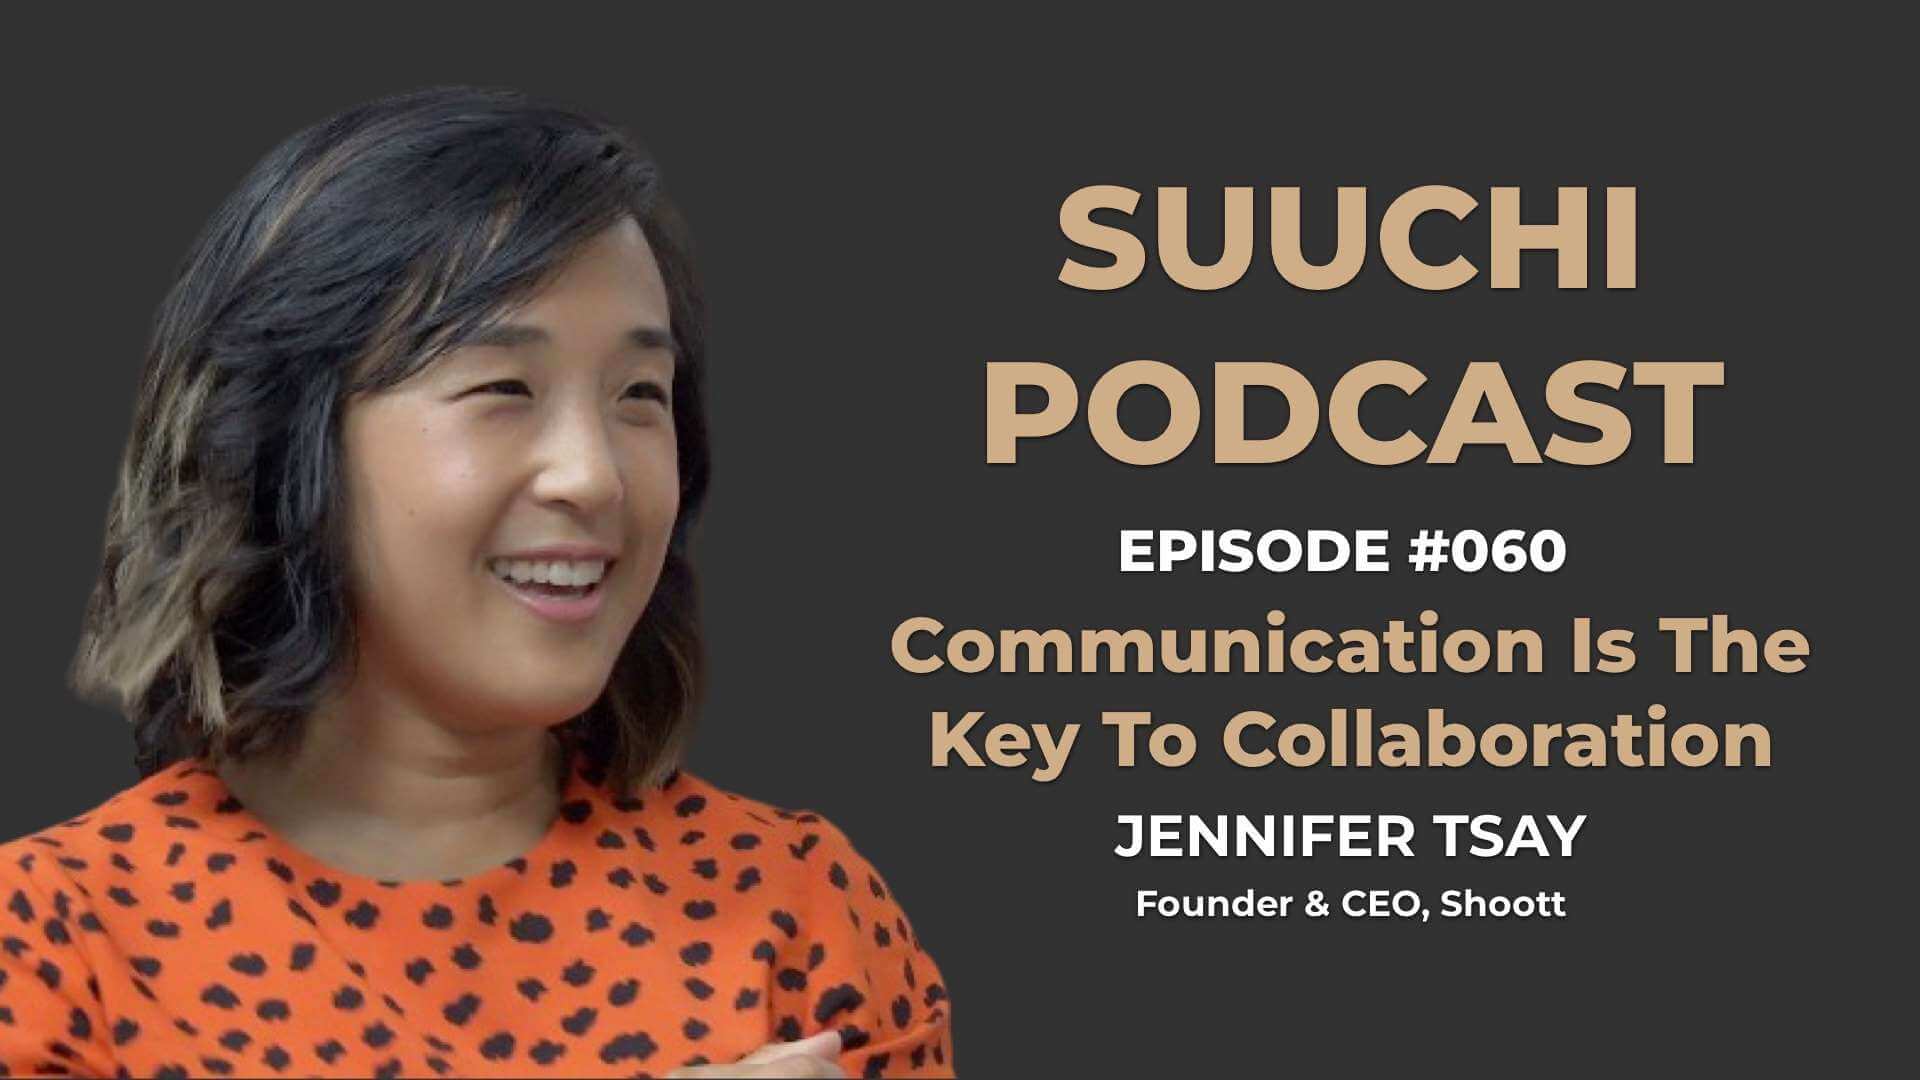 Communication is Key - Jennifer Tsay | Suuchi Podcast #60